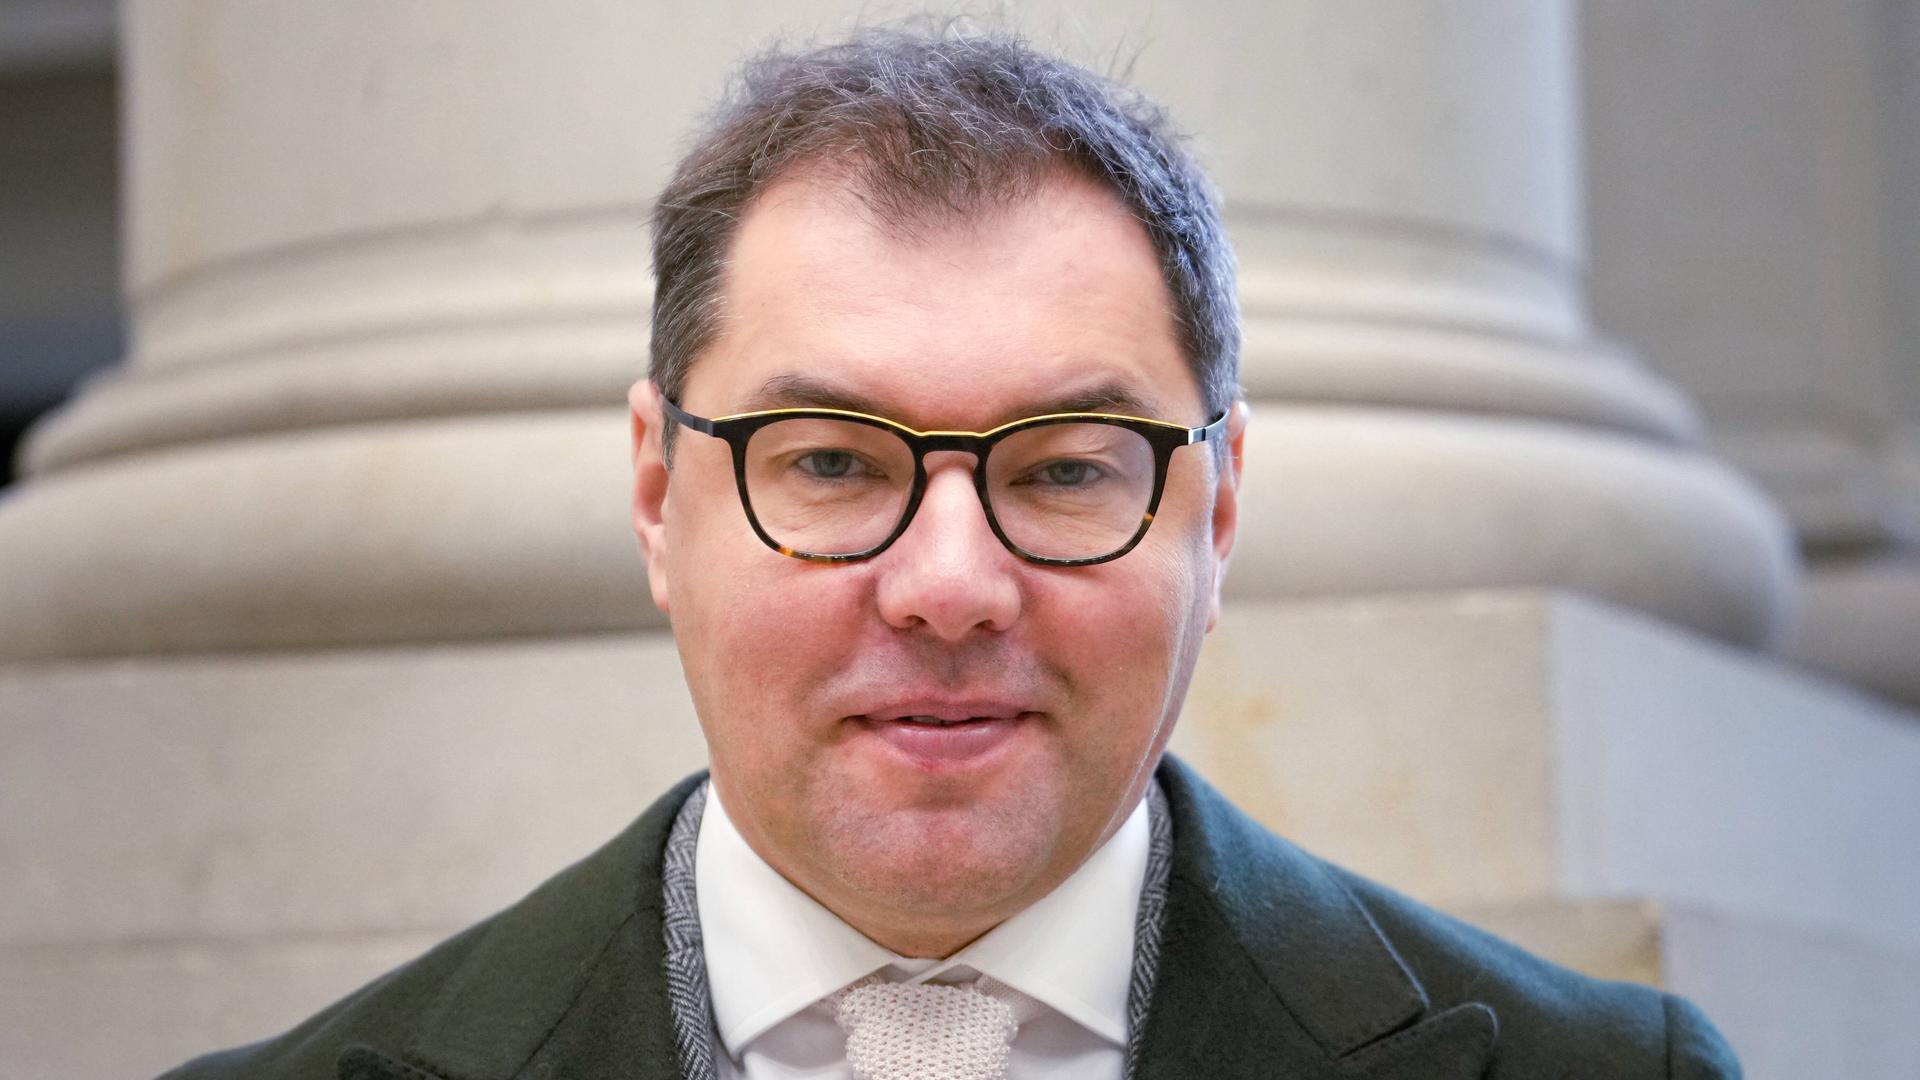 Porträt von Oleksii Makeiev dem Botschafter der Ukraine in Berlin. Er trägt Anzug, einen Mantel und eine Brille und guckt geradeaus in die Kamera.